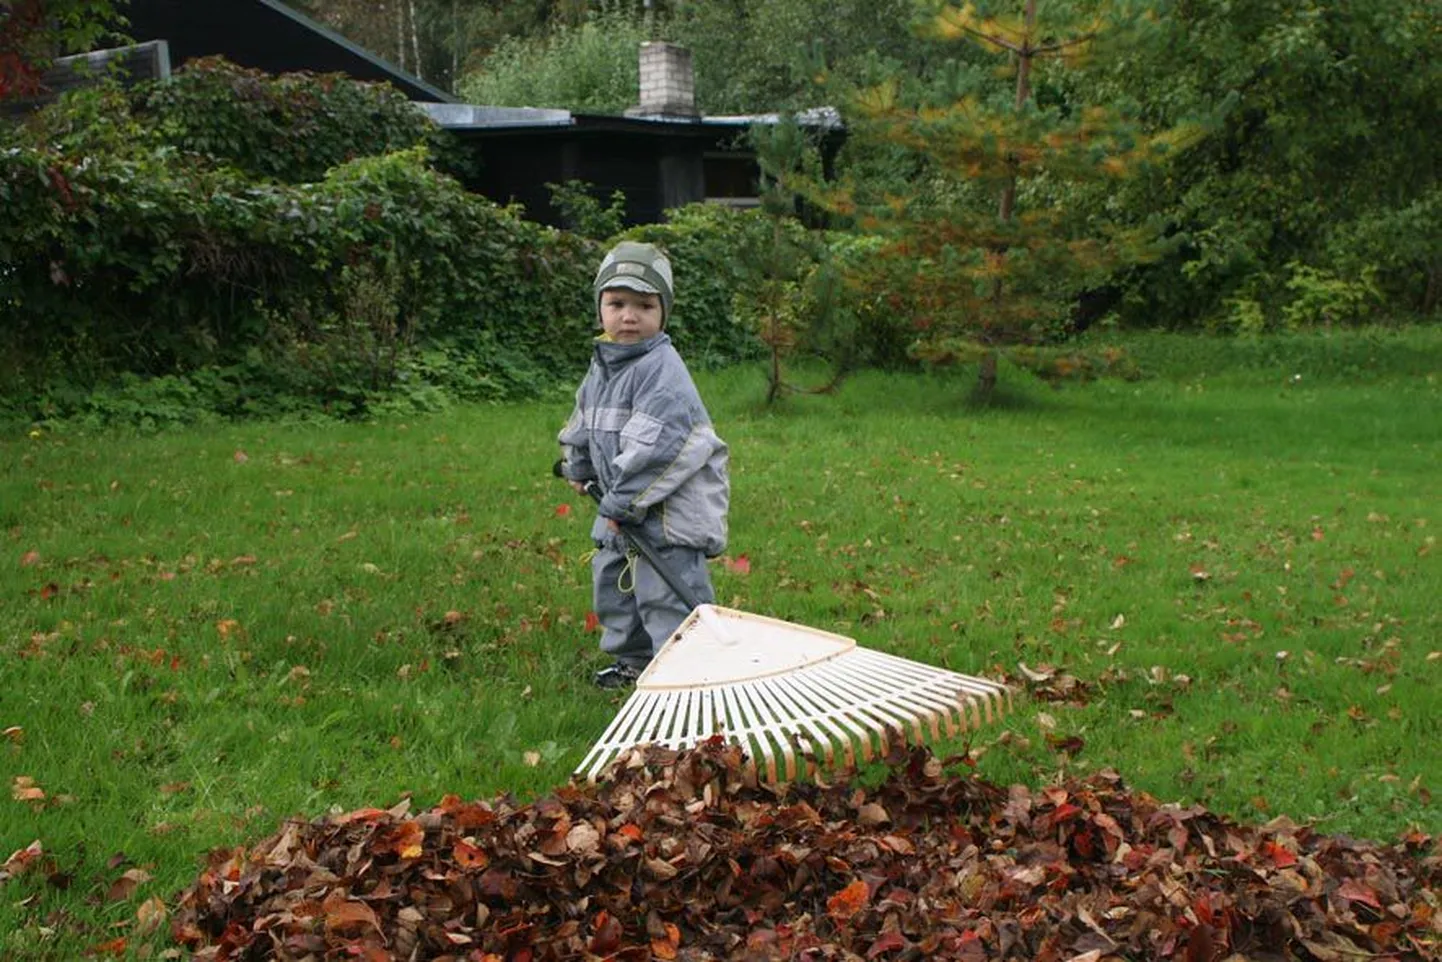 1,8aastane Simo valib otsustavalt plastikust murureha, et sellega  koduaias puulehti kokku riisuda.